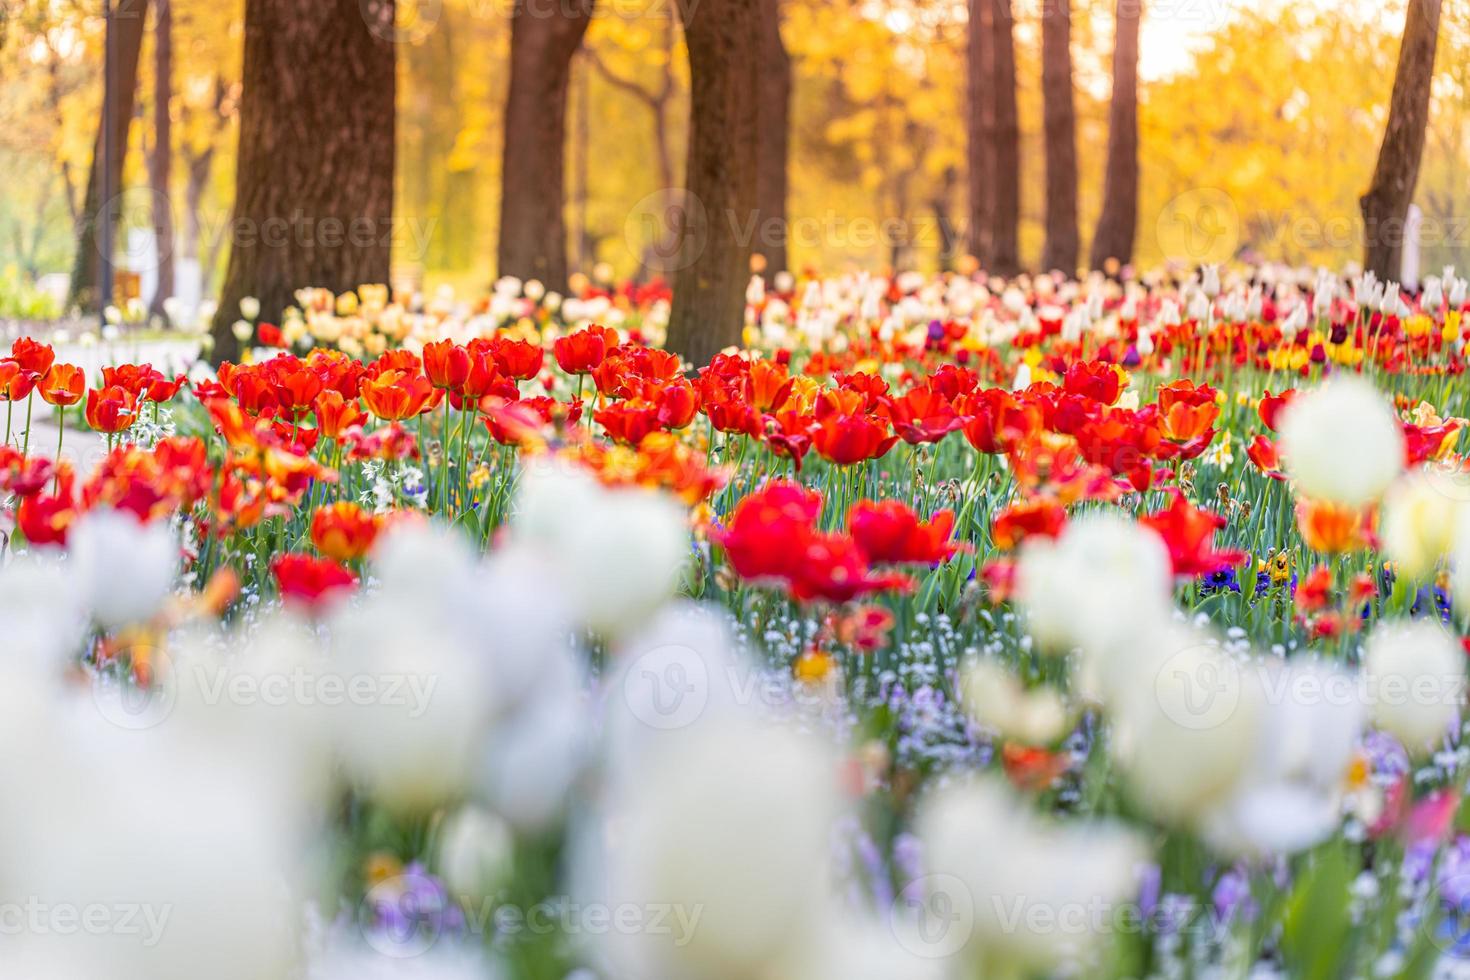 belles tulipes colorées sur un paysage naturel ensoleillé de printemps flou. panorama de fleurs de tulipes en fleurs lumineuses pour le concept d'amour nature printemps. incroyable scène de source naturelle, conception, bannière florale tranquille photo